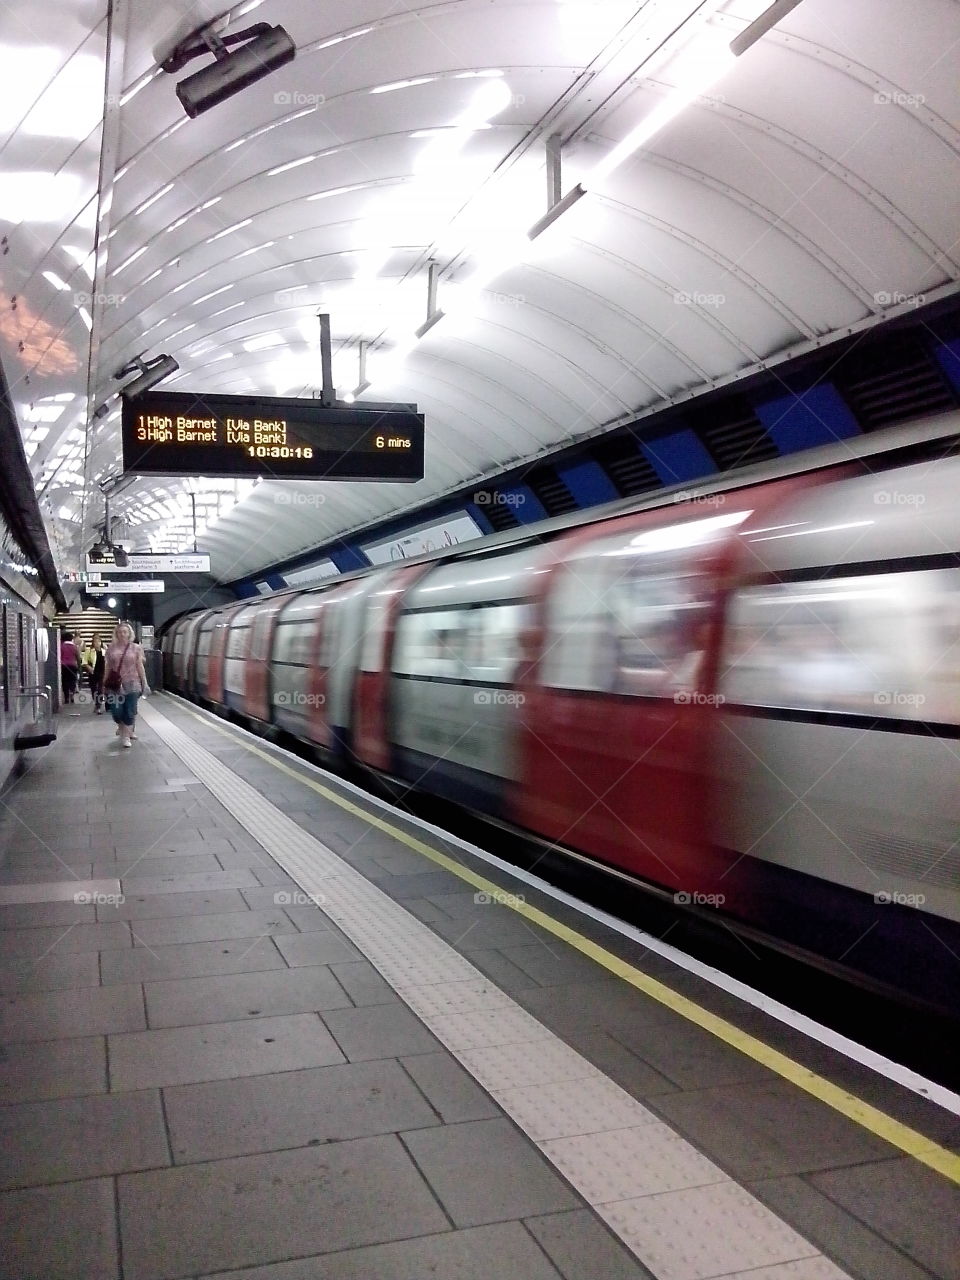 Underground in London